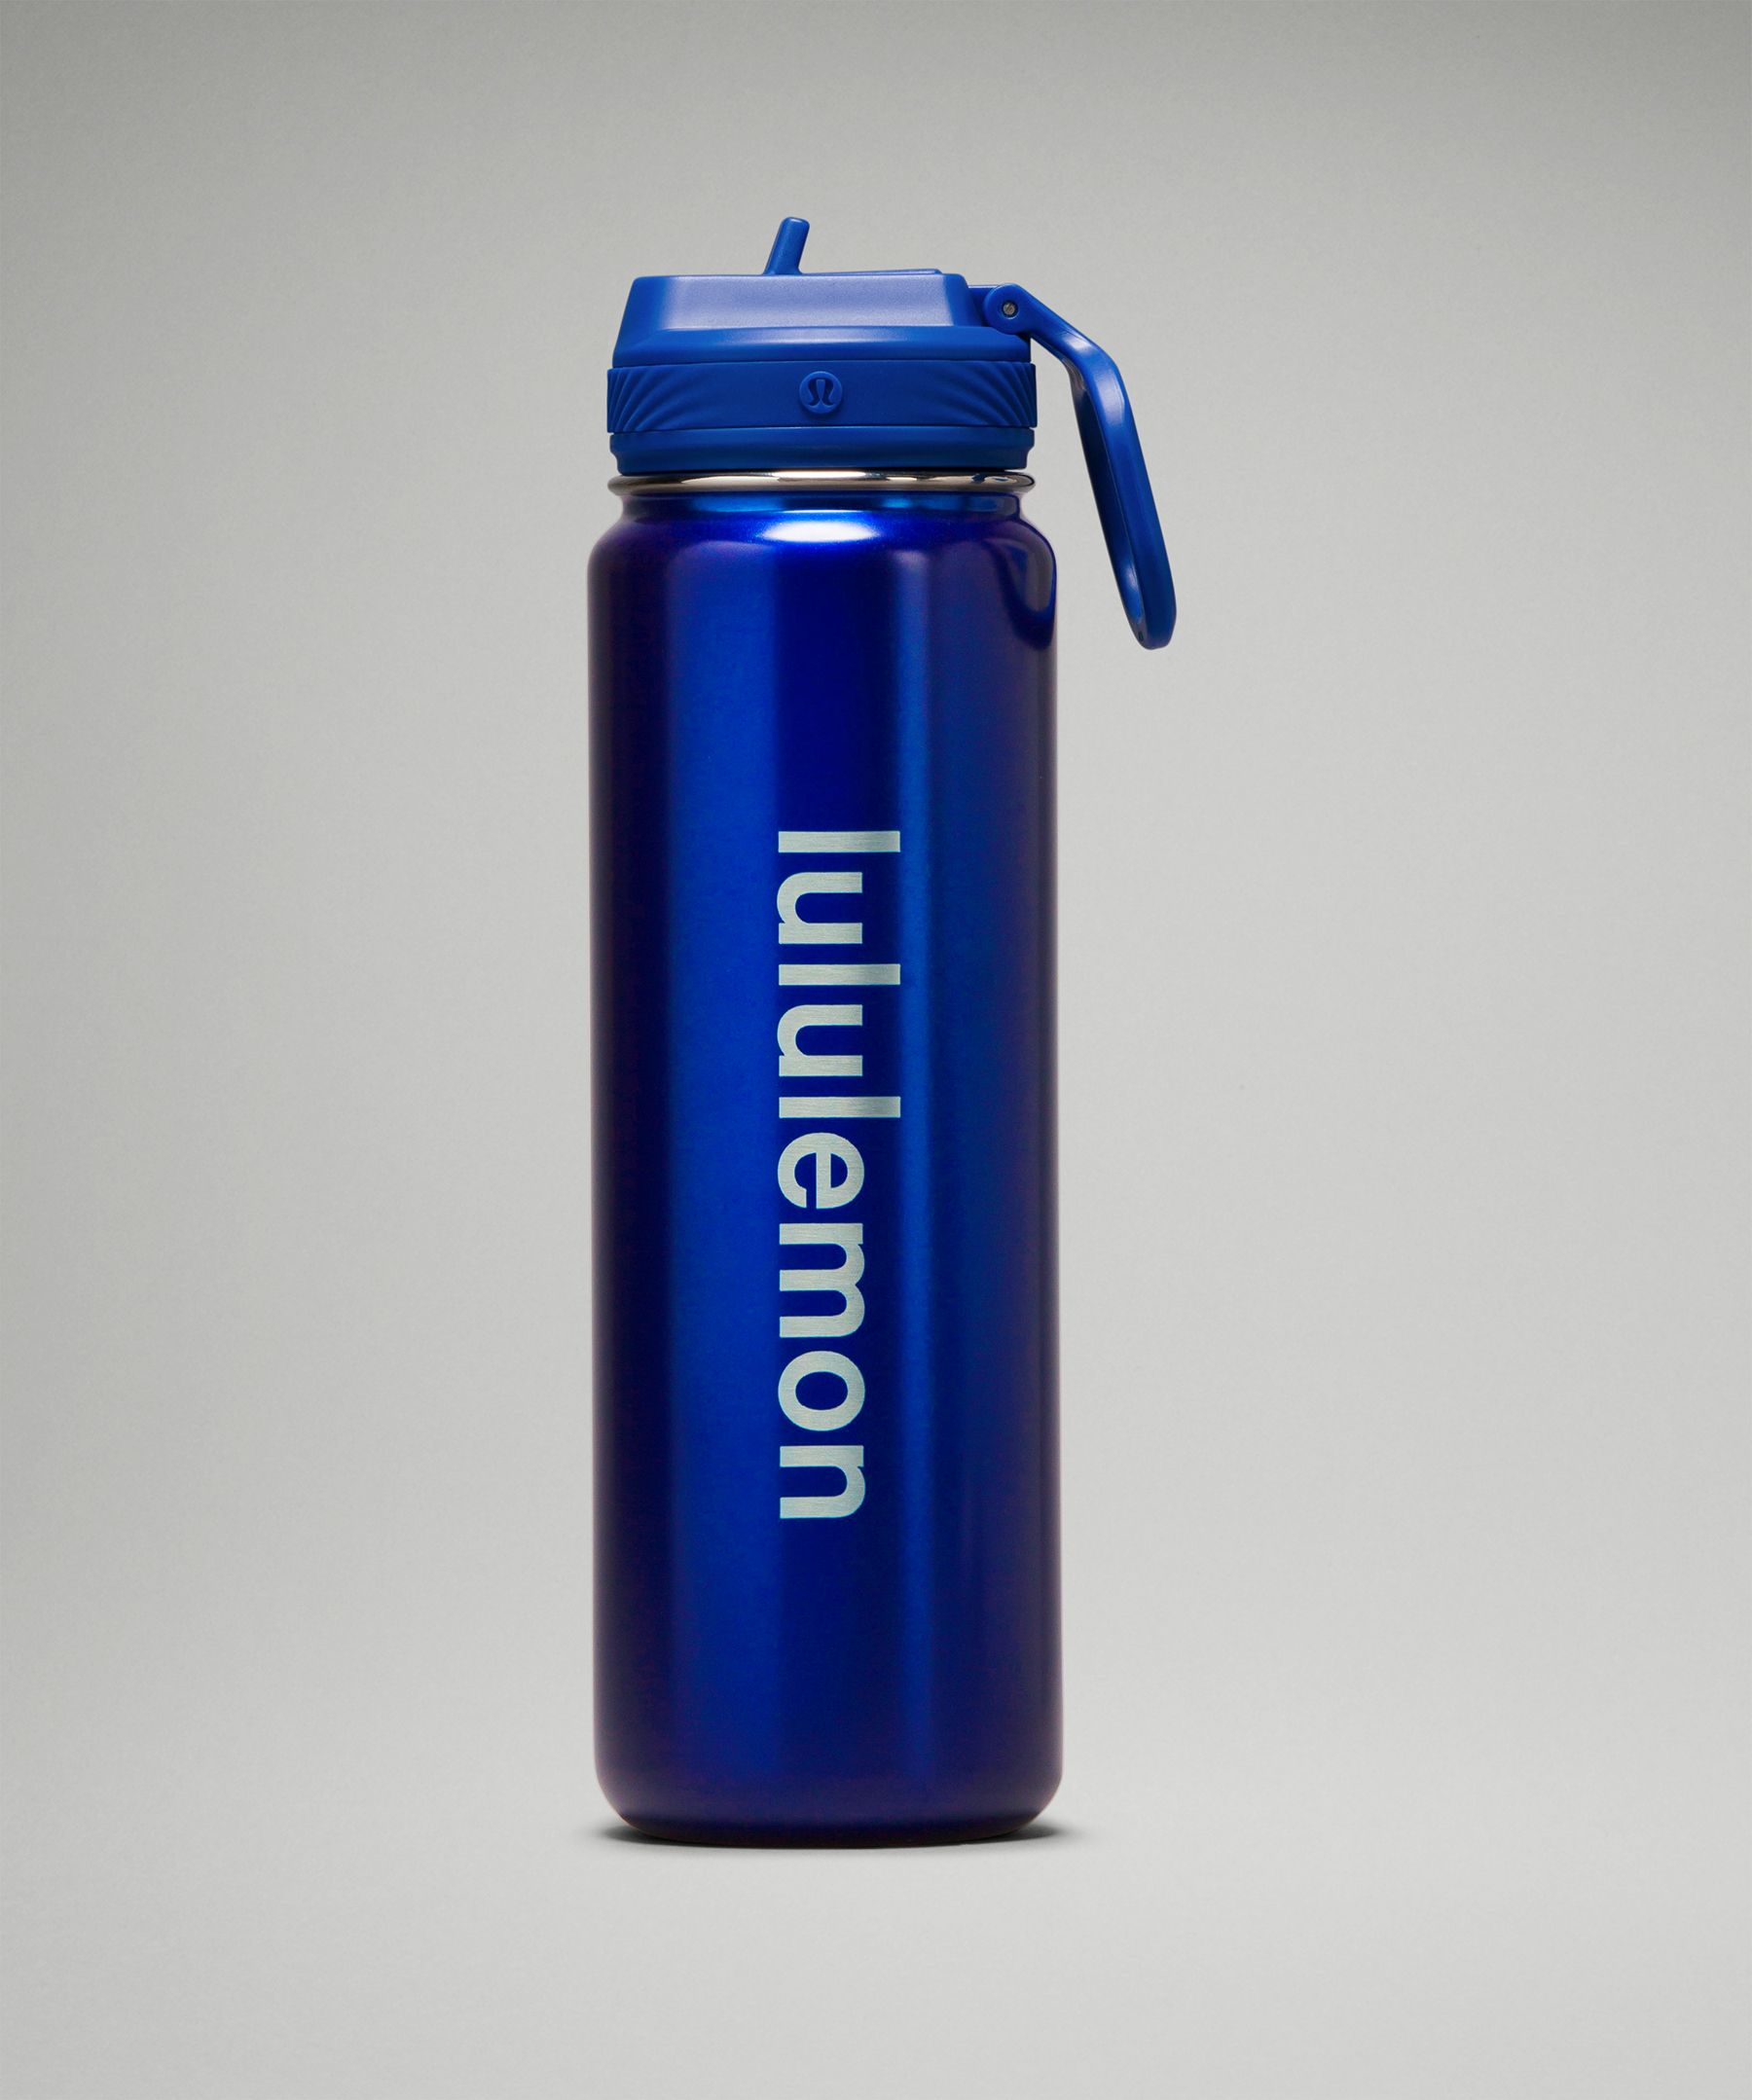 Lululemon athletica Back to Life Tumbler 24oz, Unisex Water Bottles